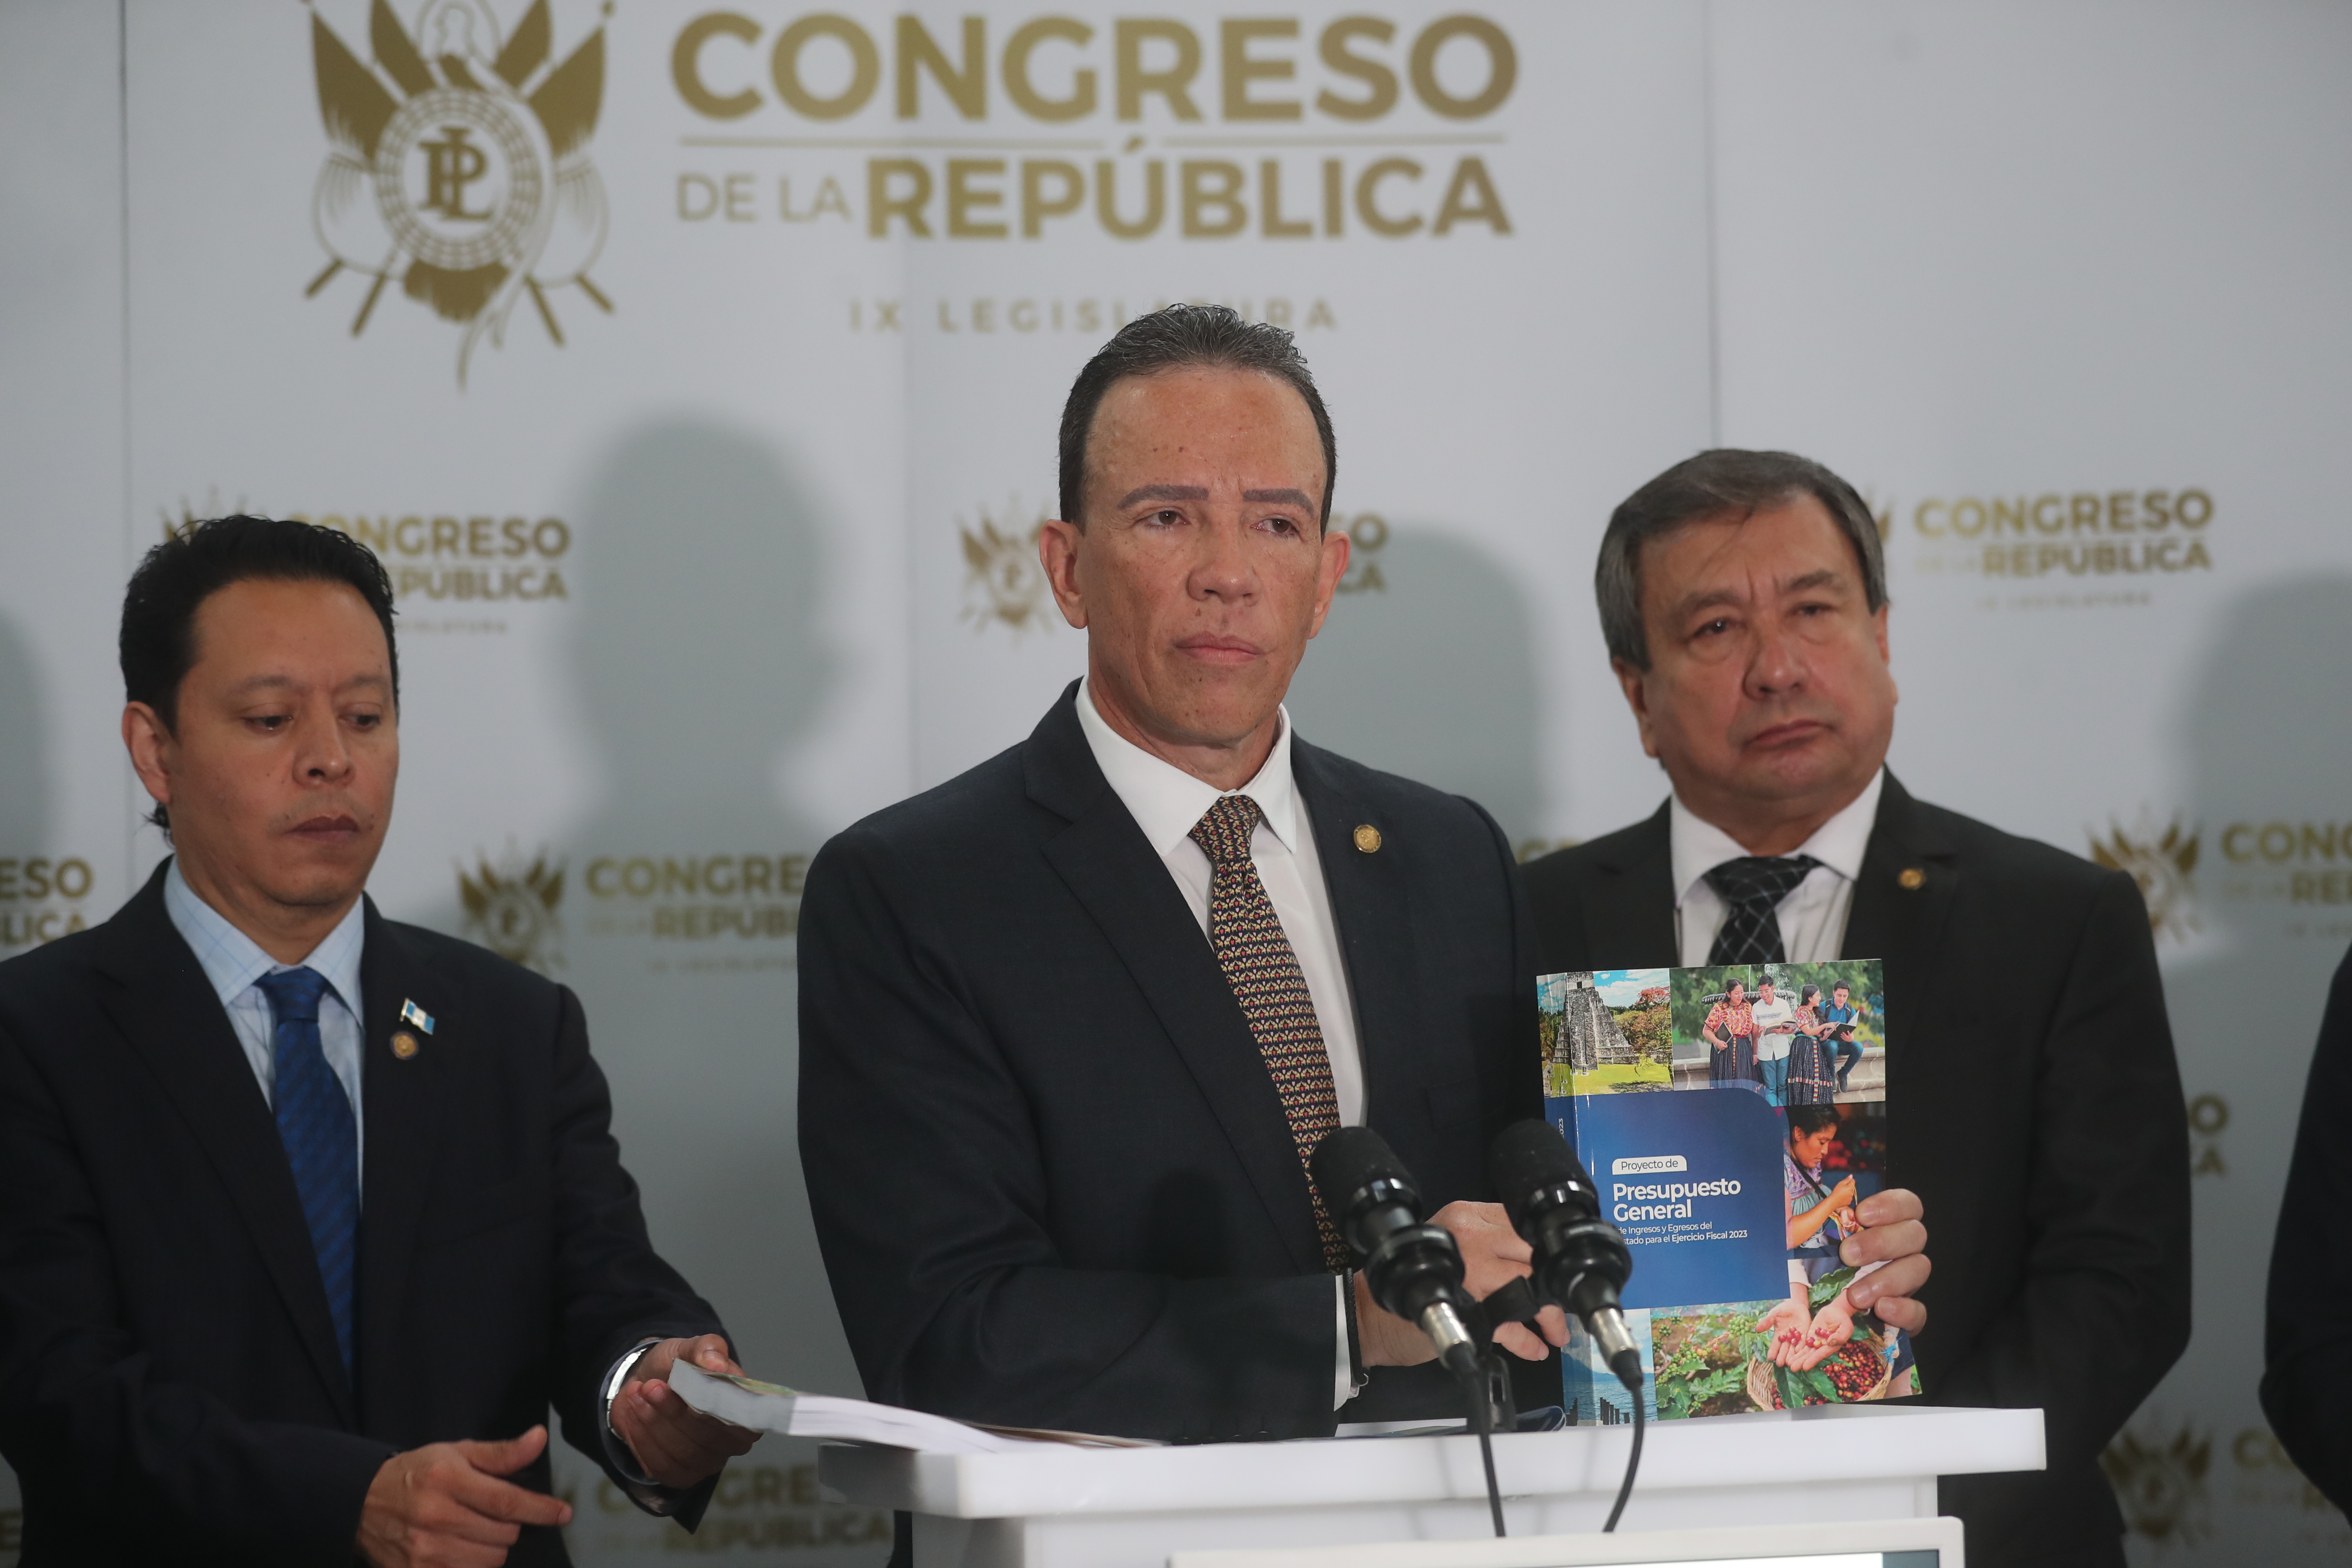 El ministro de Finanzas, Álvaro González Ricci, presentó este jueves 1 de septiembre al Congreso, la iniciativa de ley para el presupuesto del Estado del 2023. (Foto Prensa Libre: Érick Ávila)